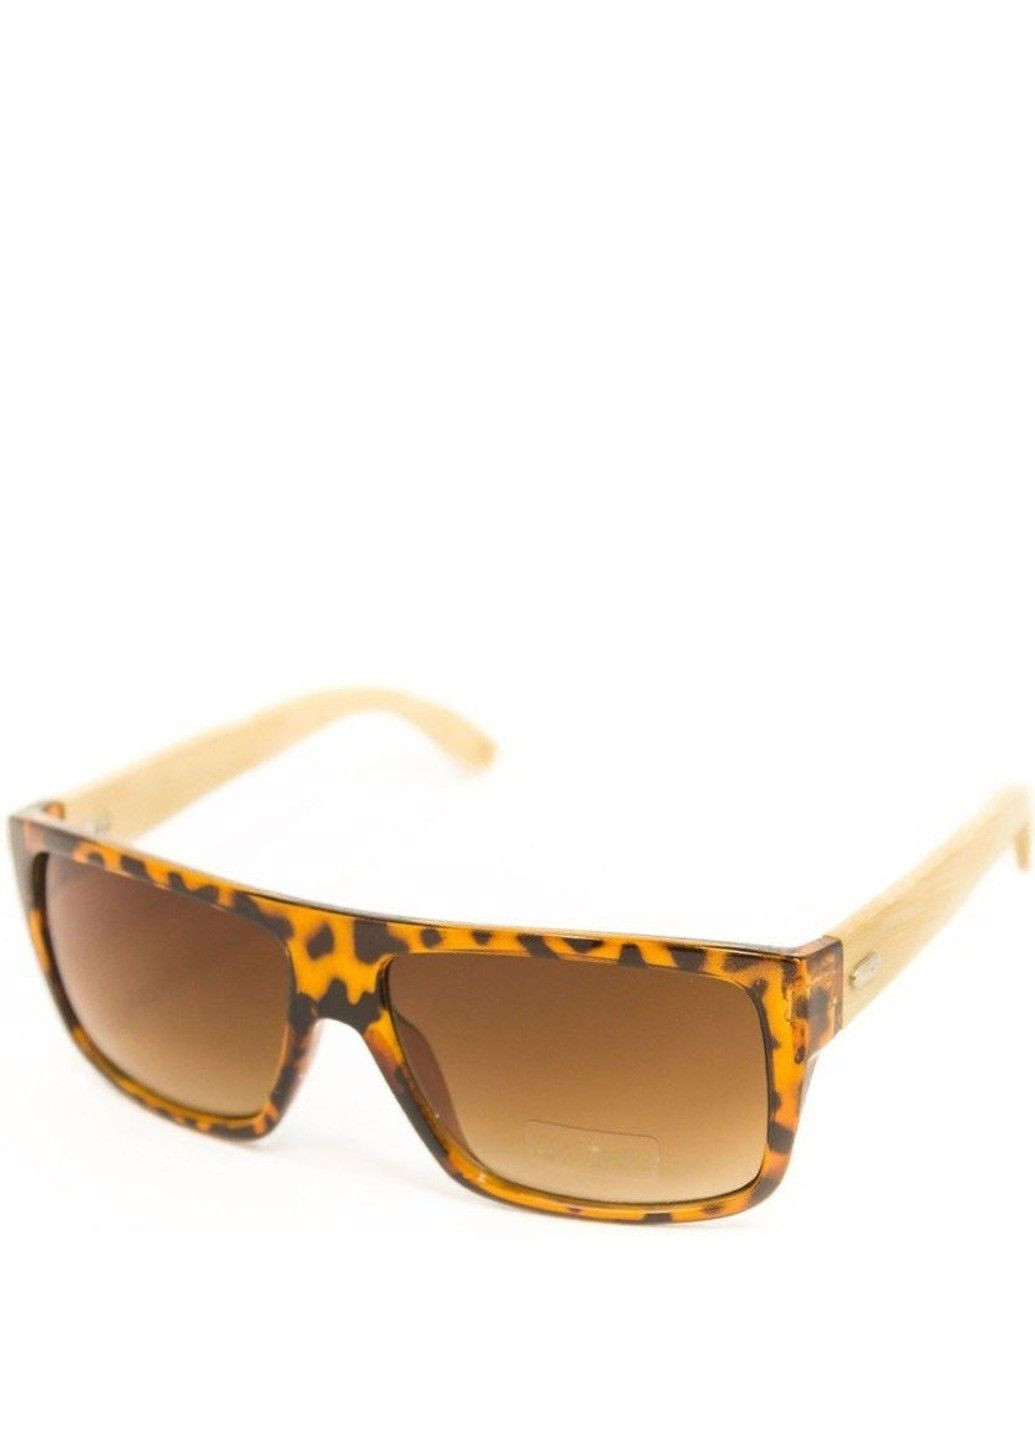 Солнцезащитные очки унисекс с деревянными дужками BR-S (292755535)